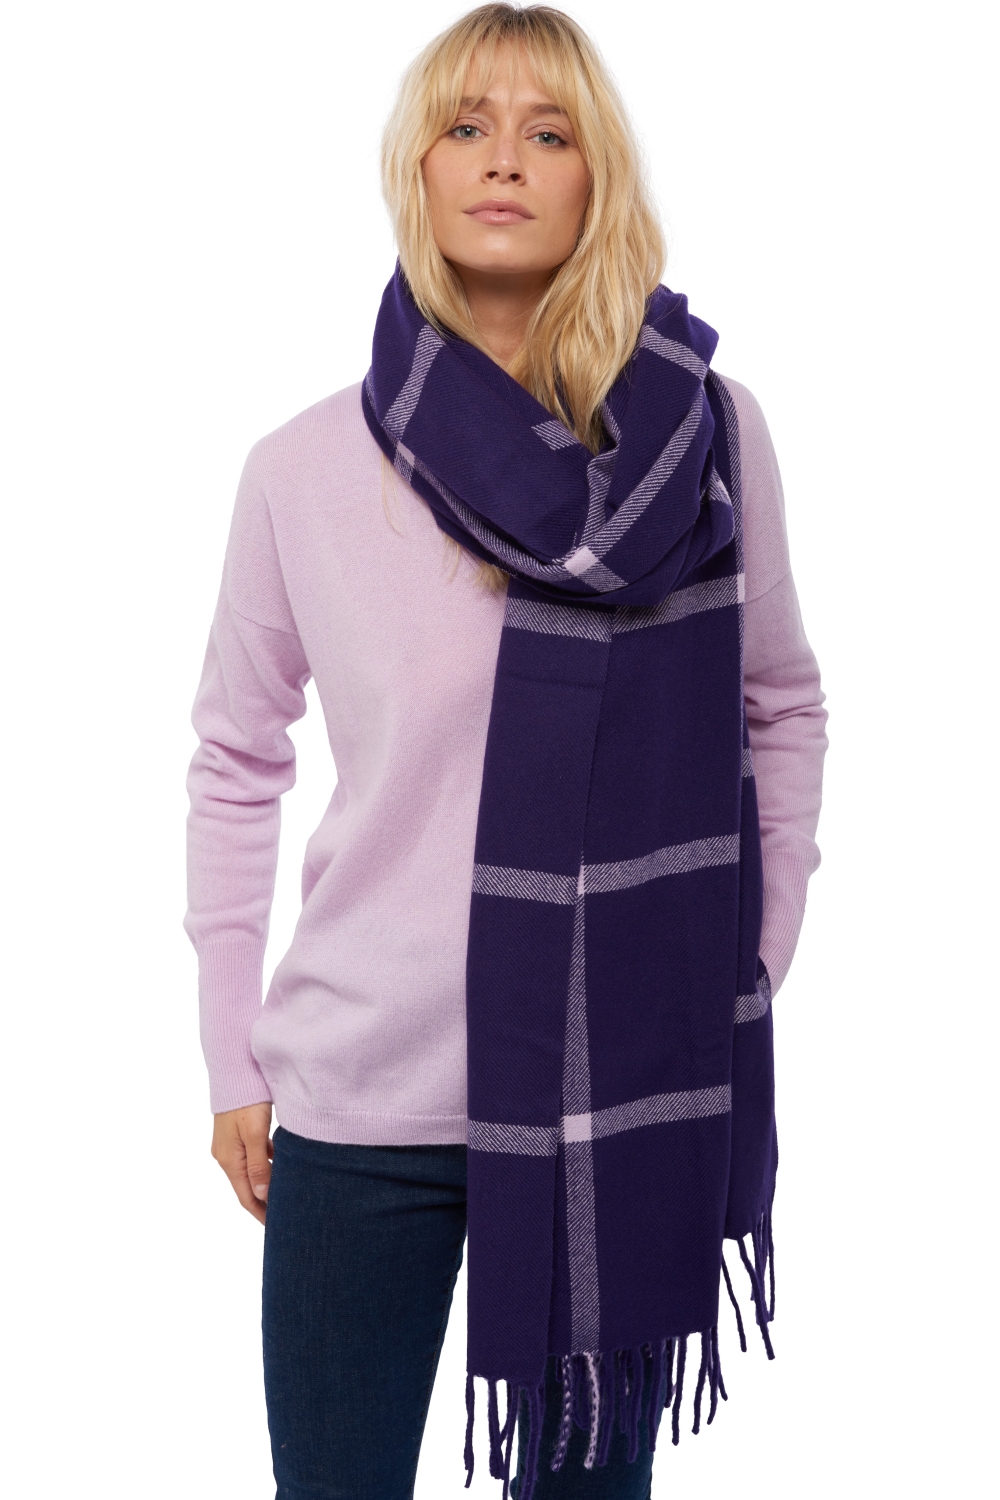 Cashmere accessories scarves mufflers venezia deep purple lilas 210 x 90 cm